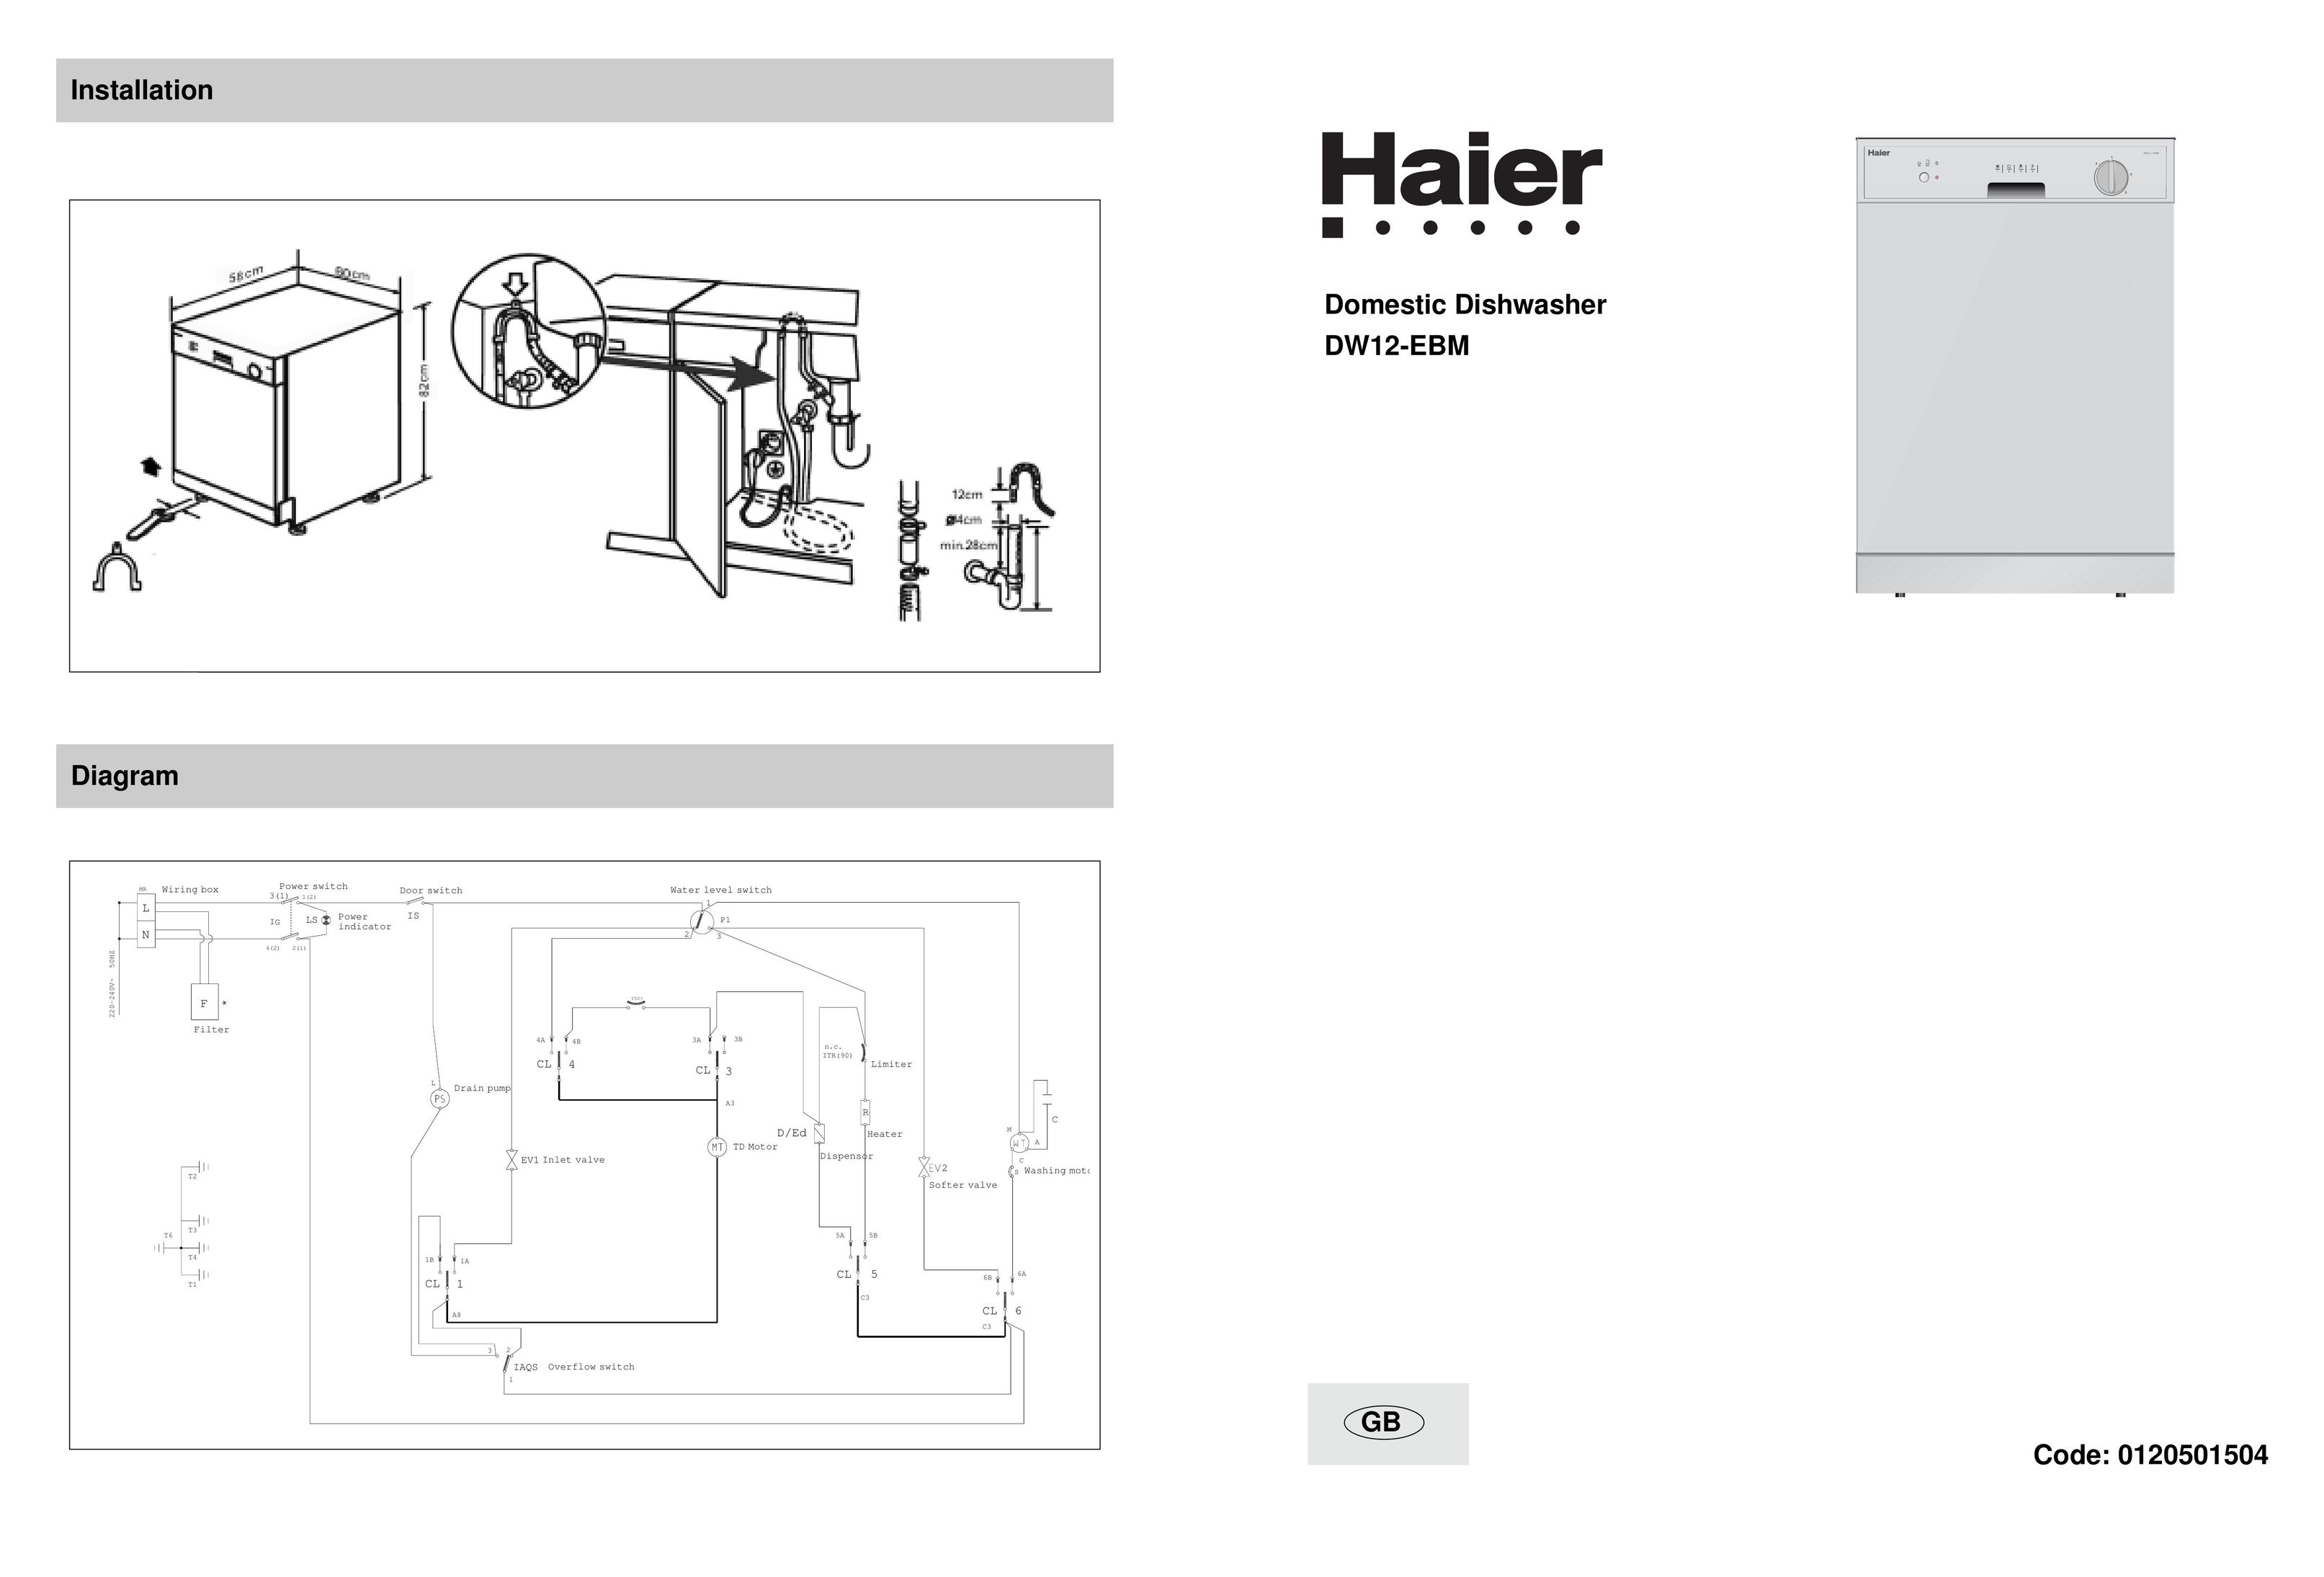 Haier DW12-EBM Dishwasher User Manual